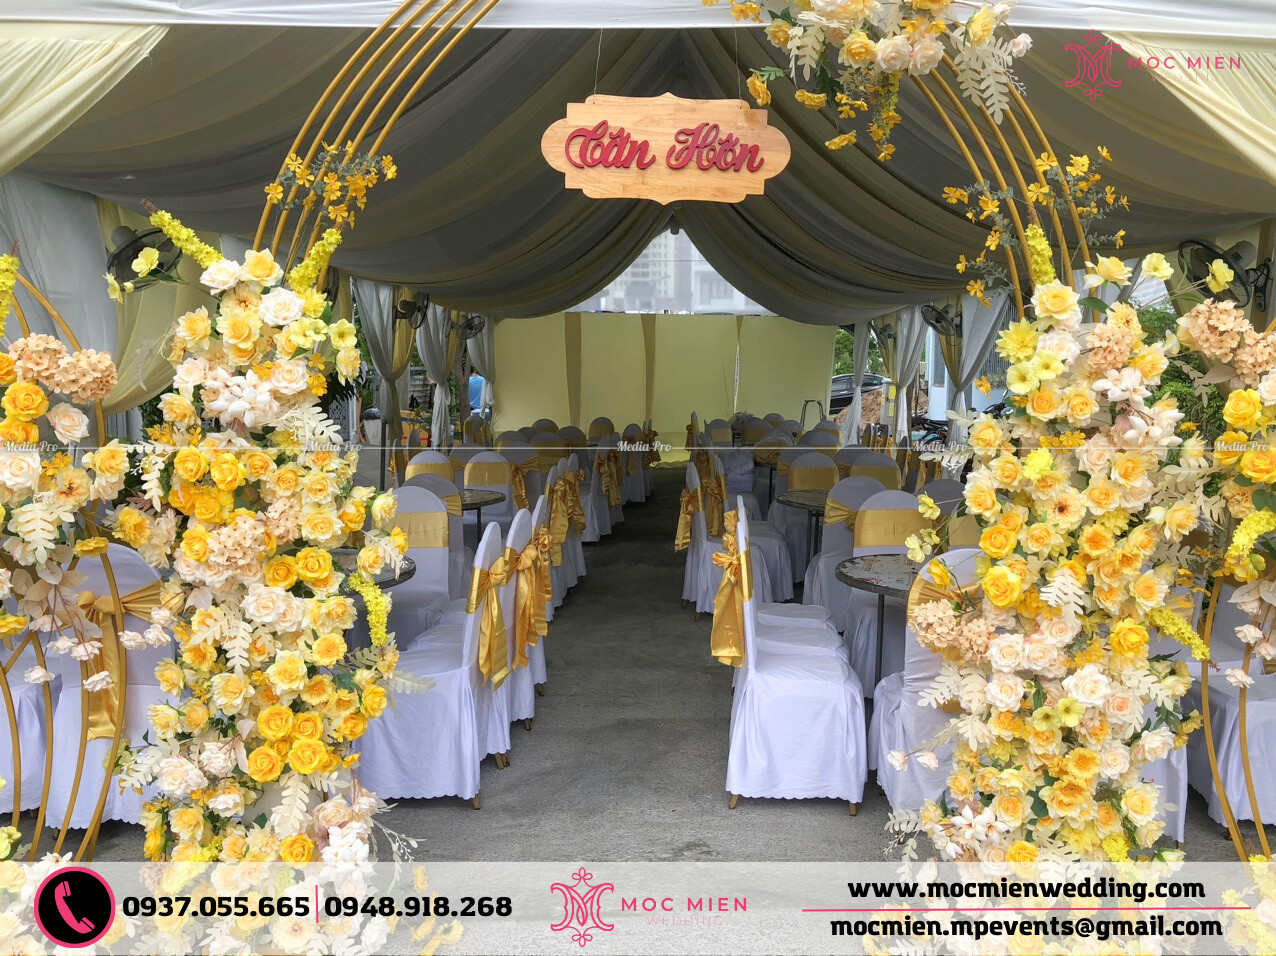 Cho thuê bàn ghế đám cưới theo tone màu vàng kem 